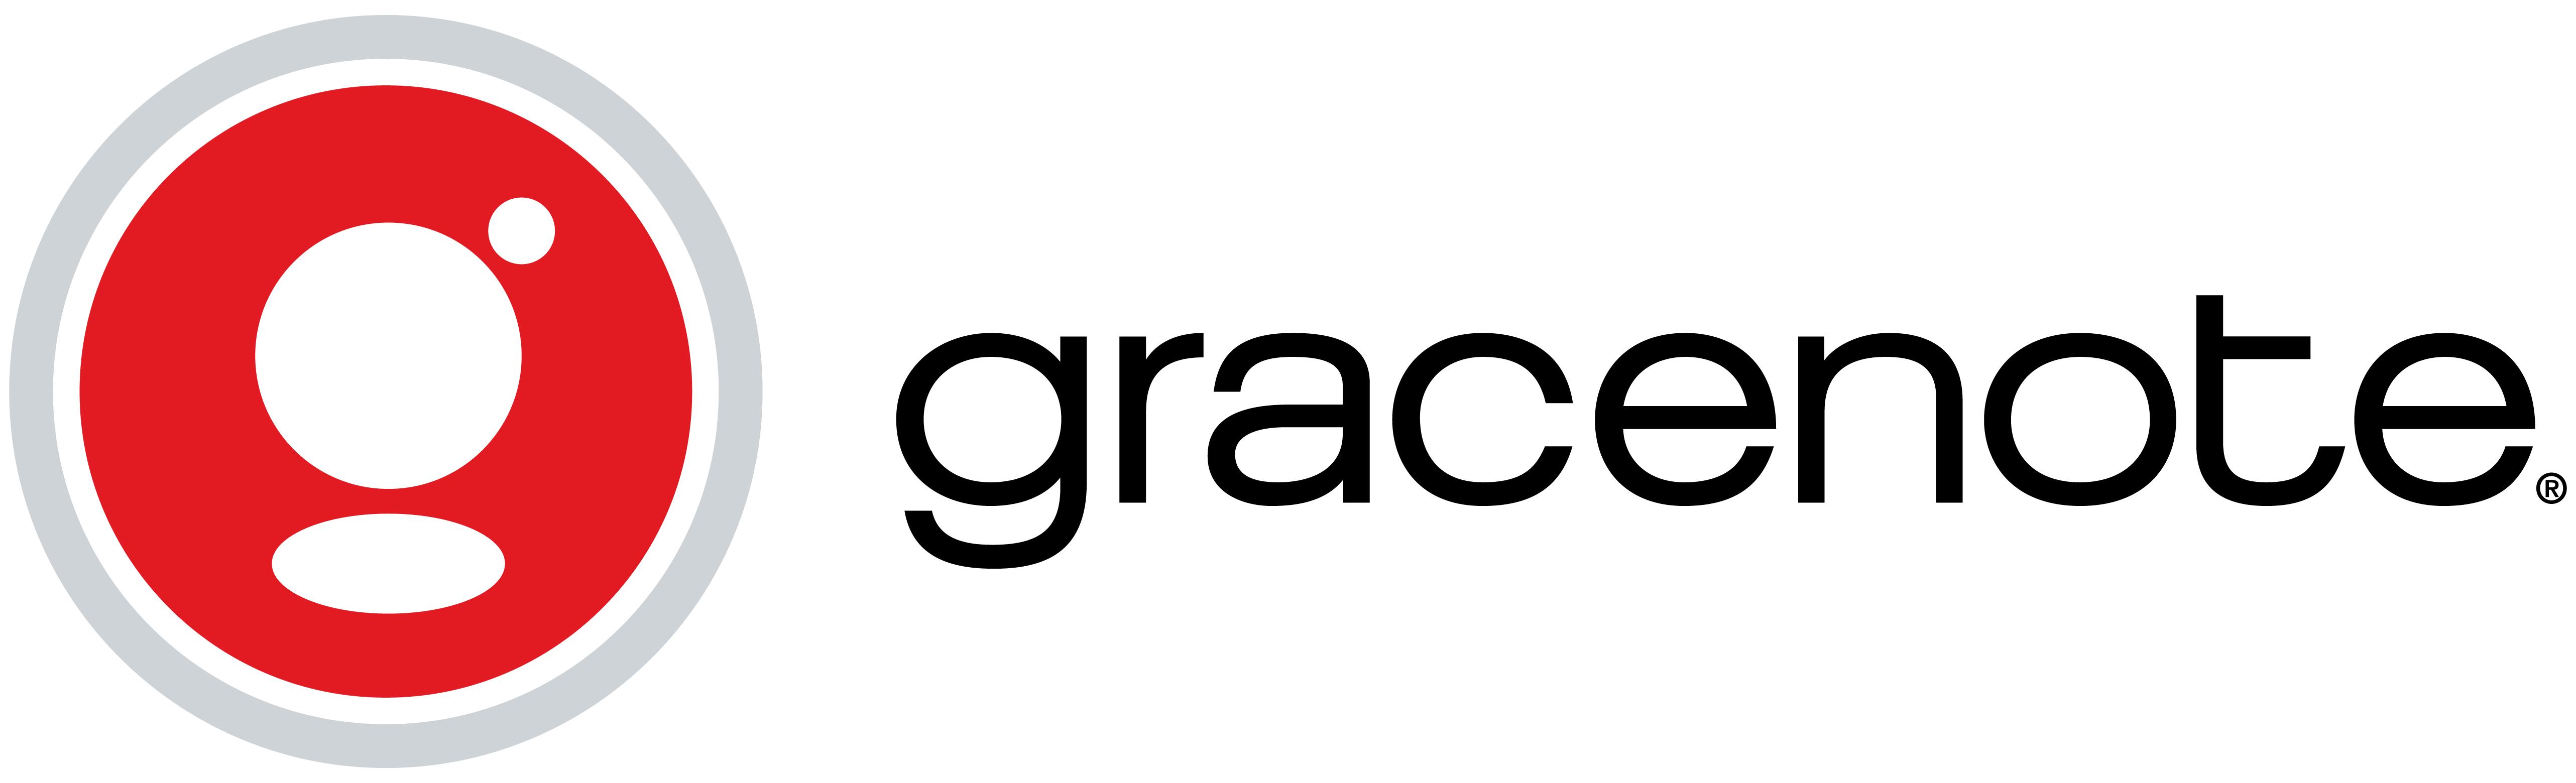 TuneCore Logo - Gracenote: Description, Go Live Time, Territories, Benefits